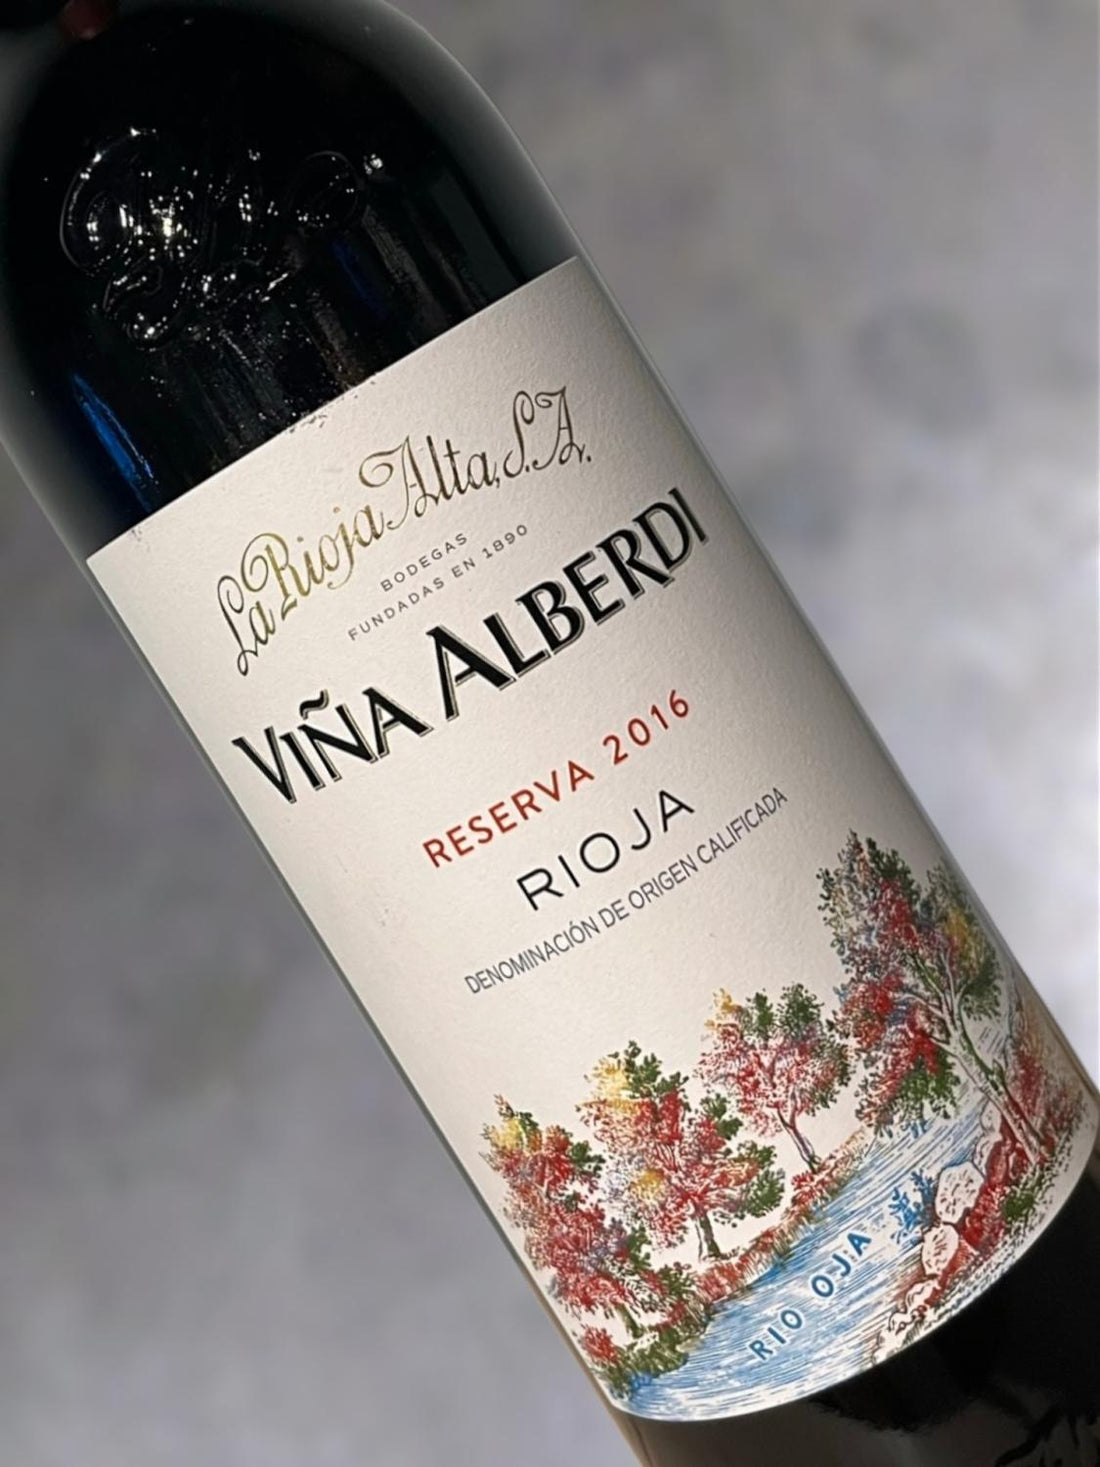 La Rioja Alta Vina Alberdi 2018